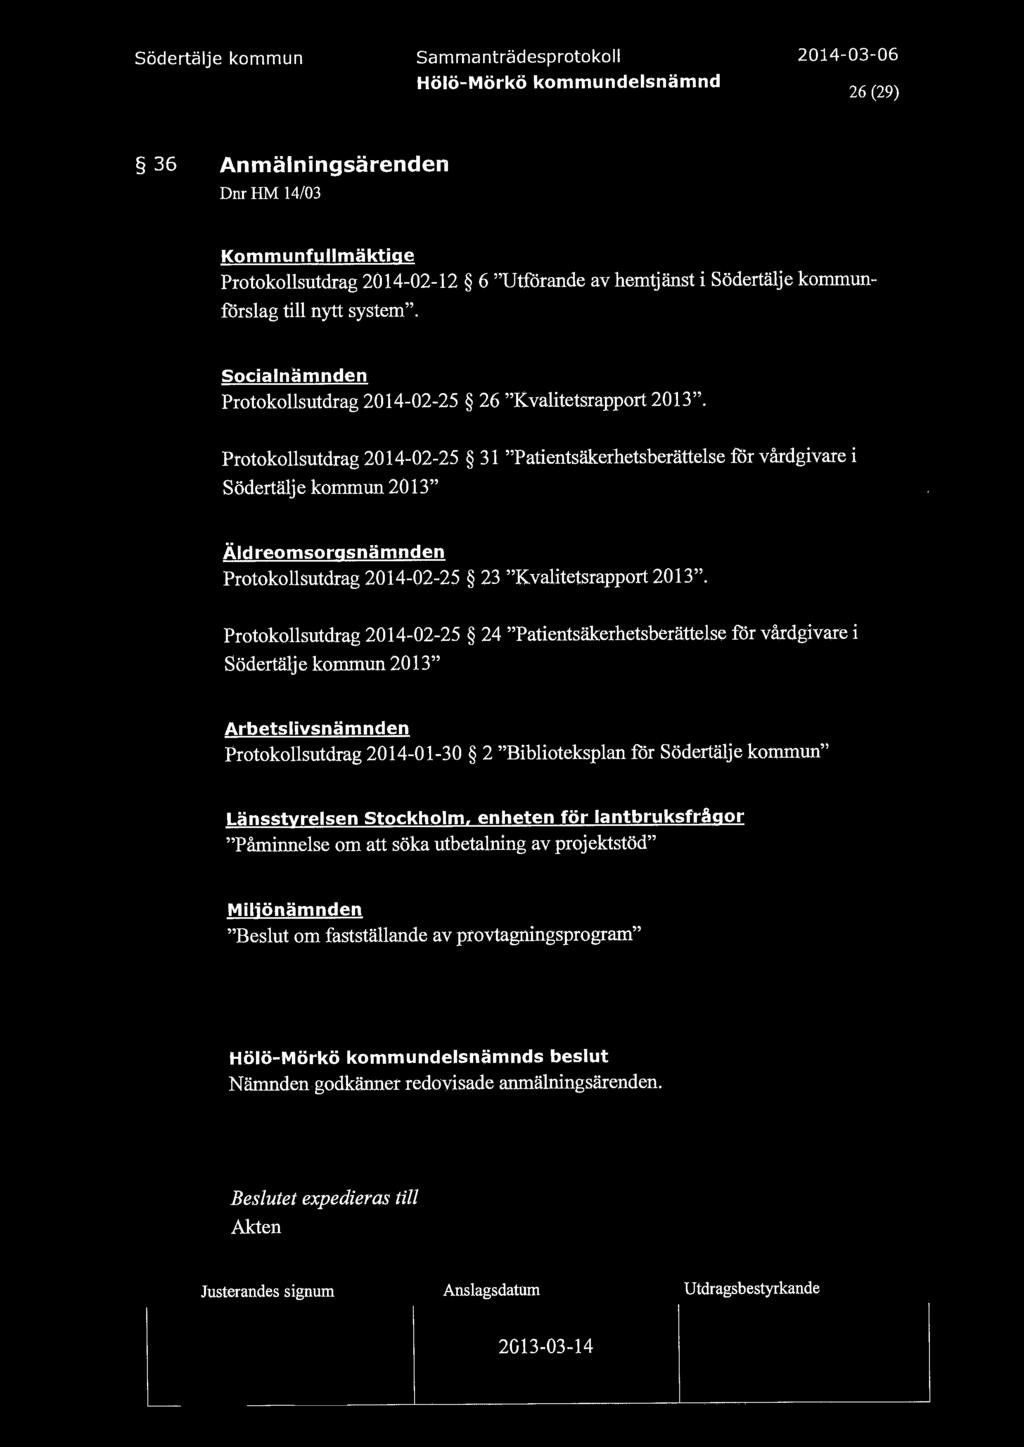 26 (29) 36 Anmälningsärenden DnrHM 14/03 Kommunfullmäktige Protokollsutdrag 2014-02-12 6 "Utförande av hemtjänst i Södertälje kommunförslag till nytt system".